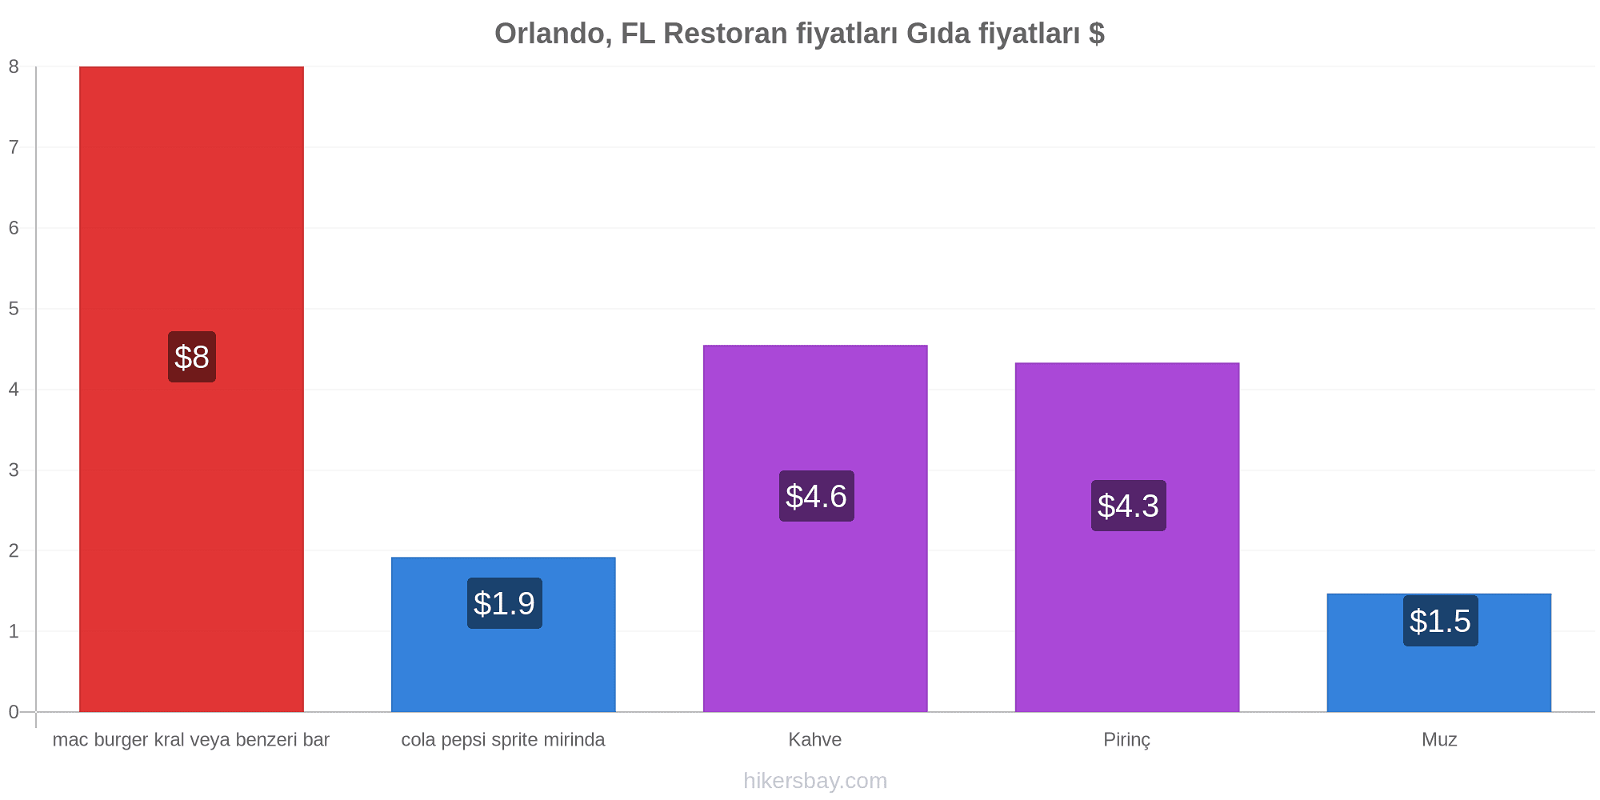 Orlando, FL fiyat değişiklikleri hikersbay.com